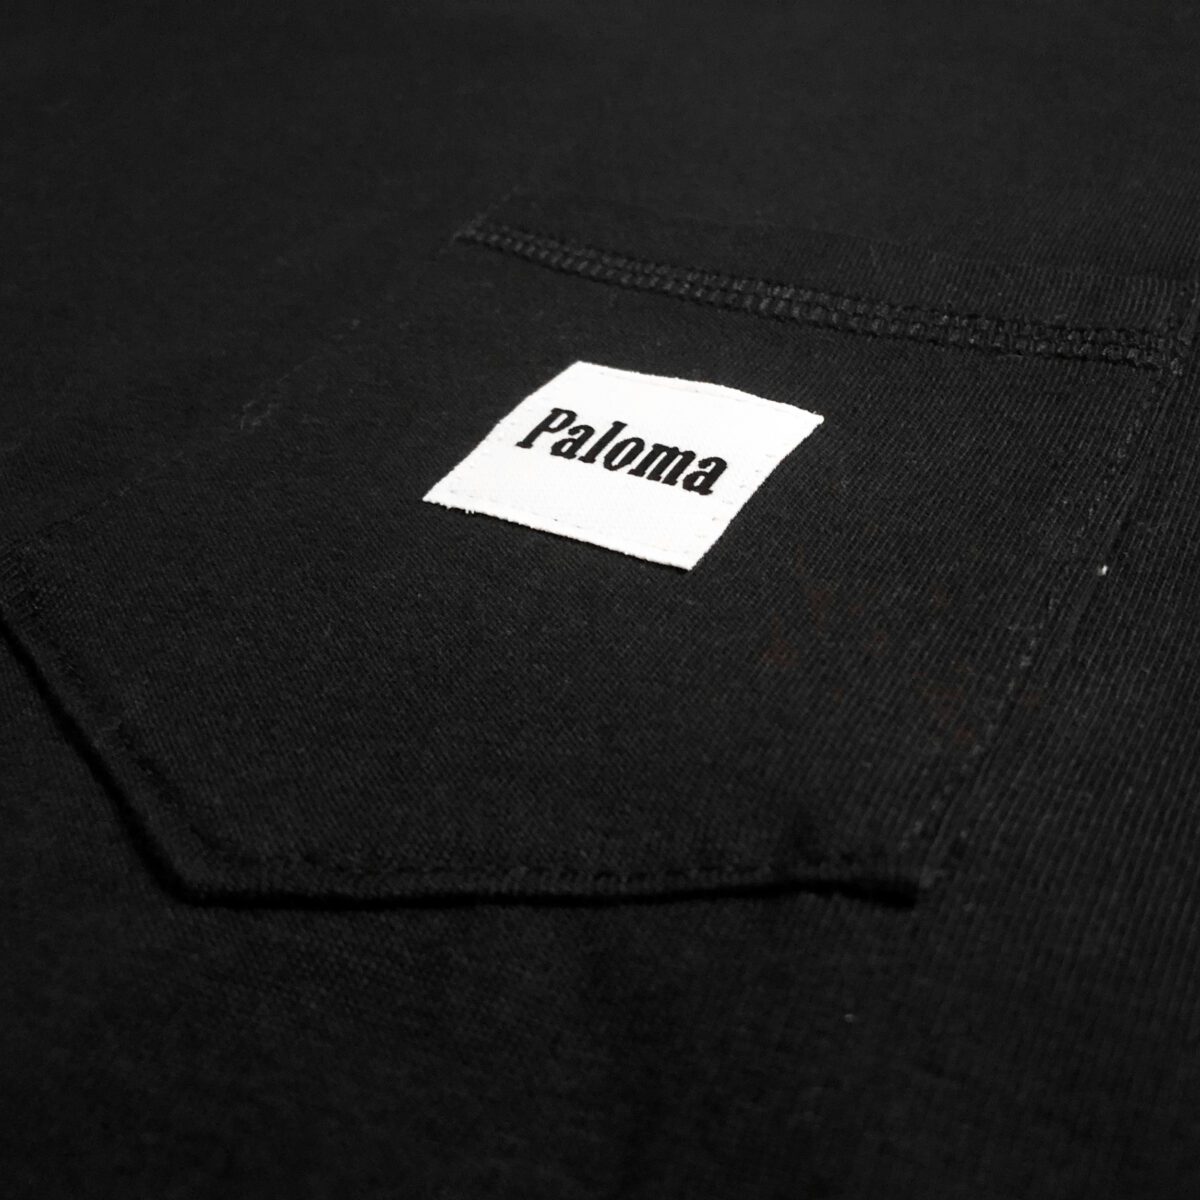 Paloma Fixie Mervan Pocket T-Shirt